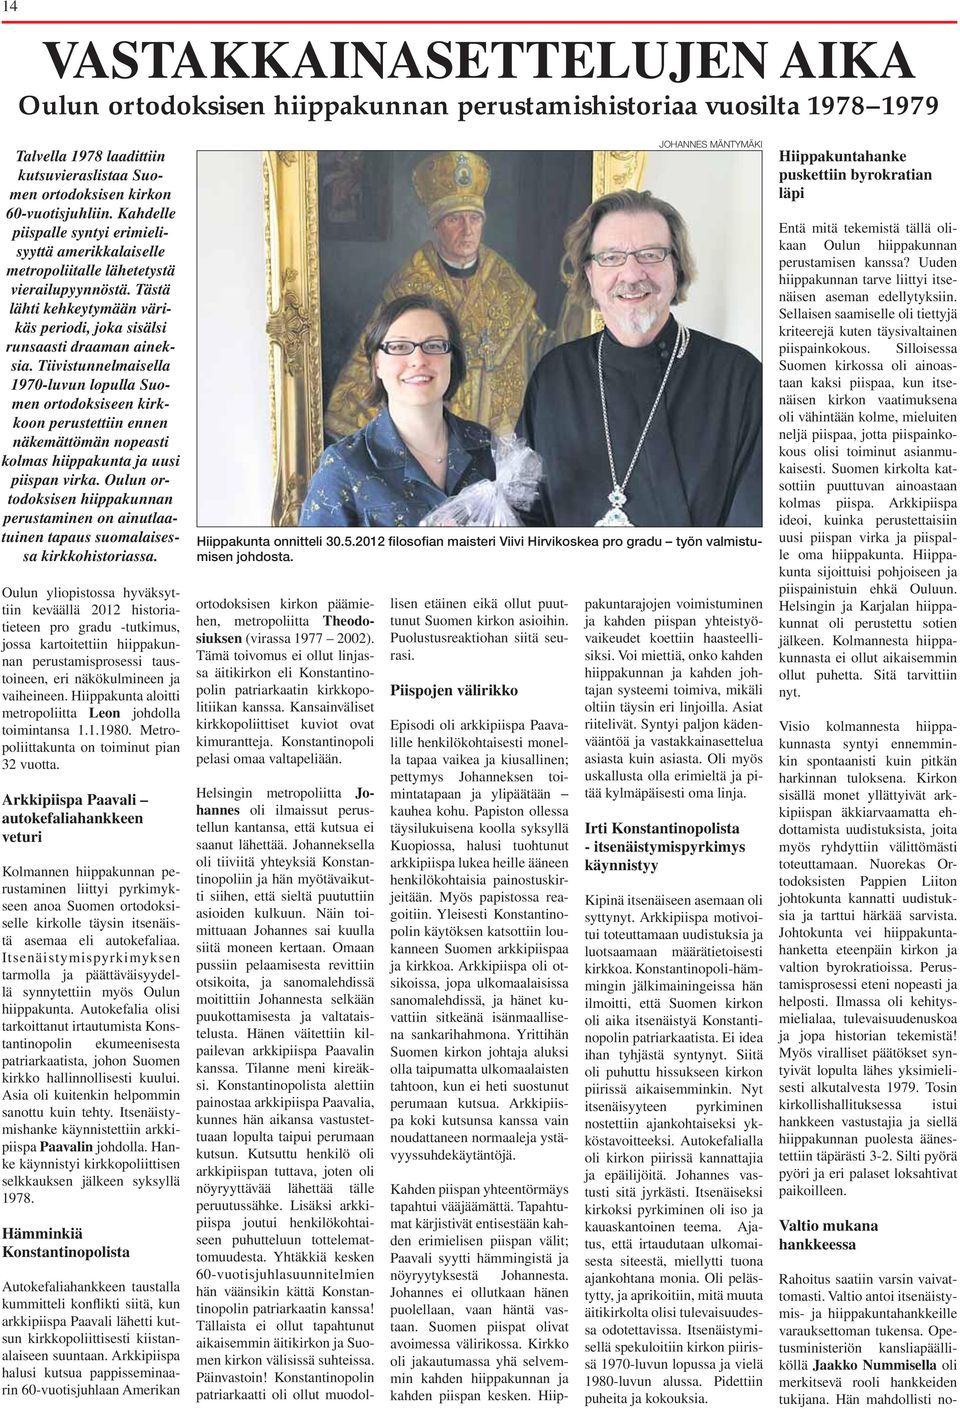 Tiivistunnelmaisella 1970-luvun lopulla Suomen ortodoksiseen kirkkoon perustettiin ennen näkemättömän nopeasti kolmas hiippakunta ja uusi piispan virka.